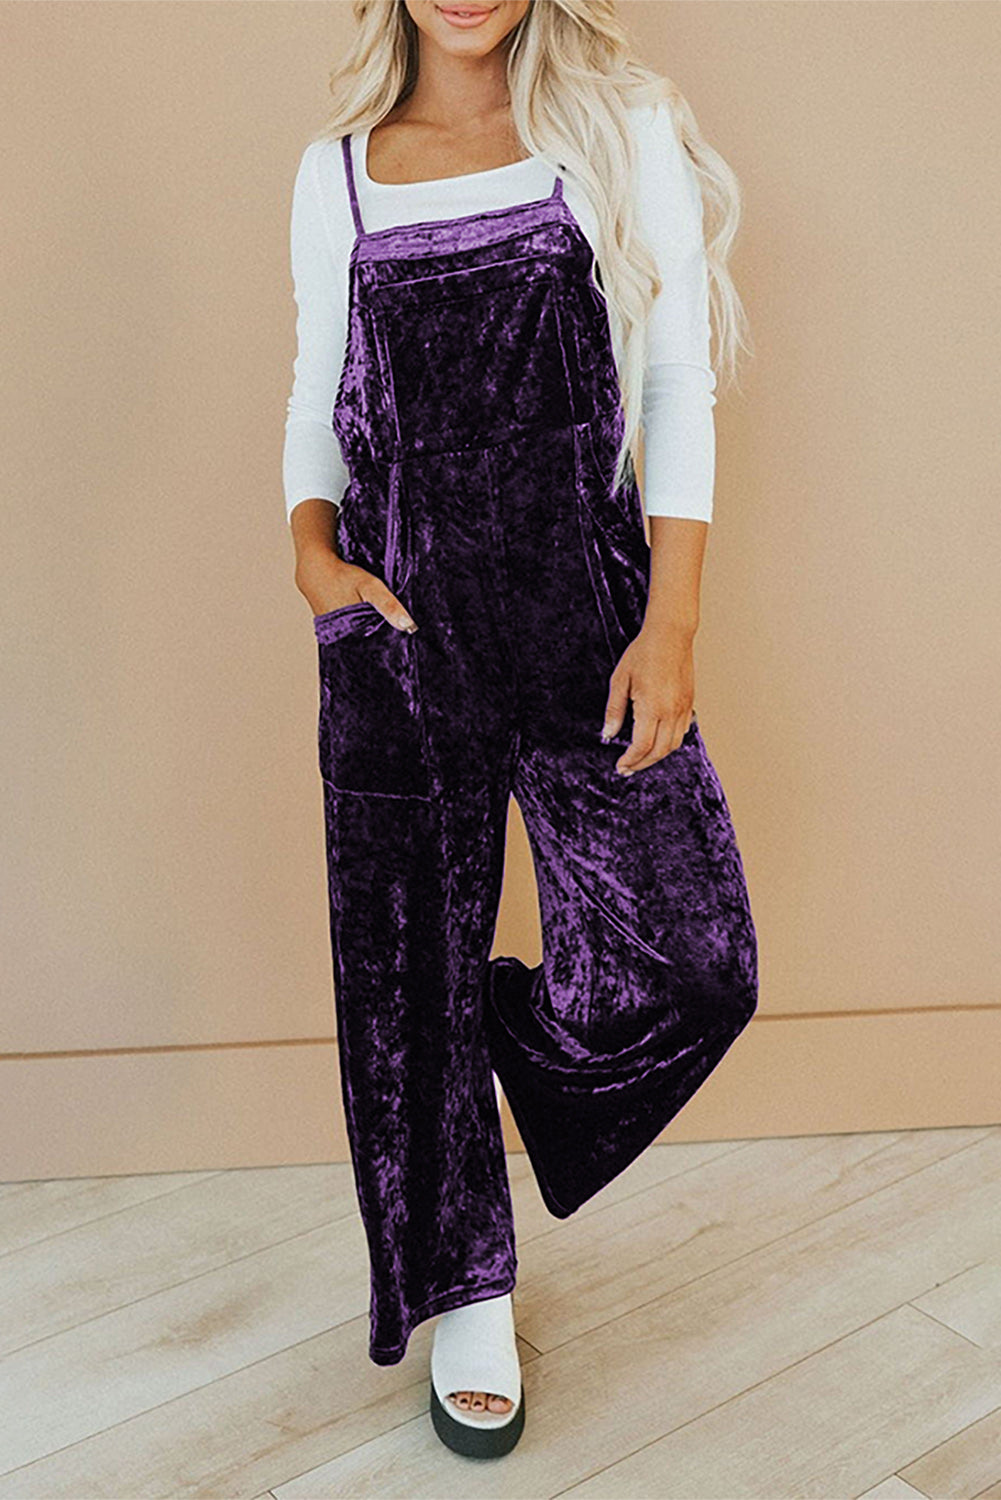 Tillandsia violet vintage fines bretelles poches latérales salopette en velours